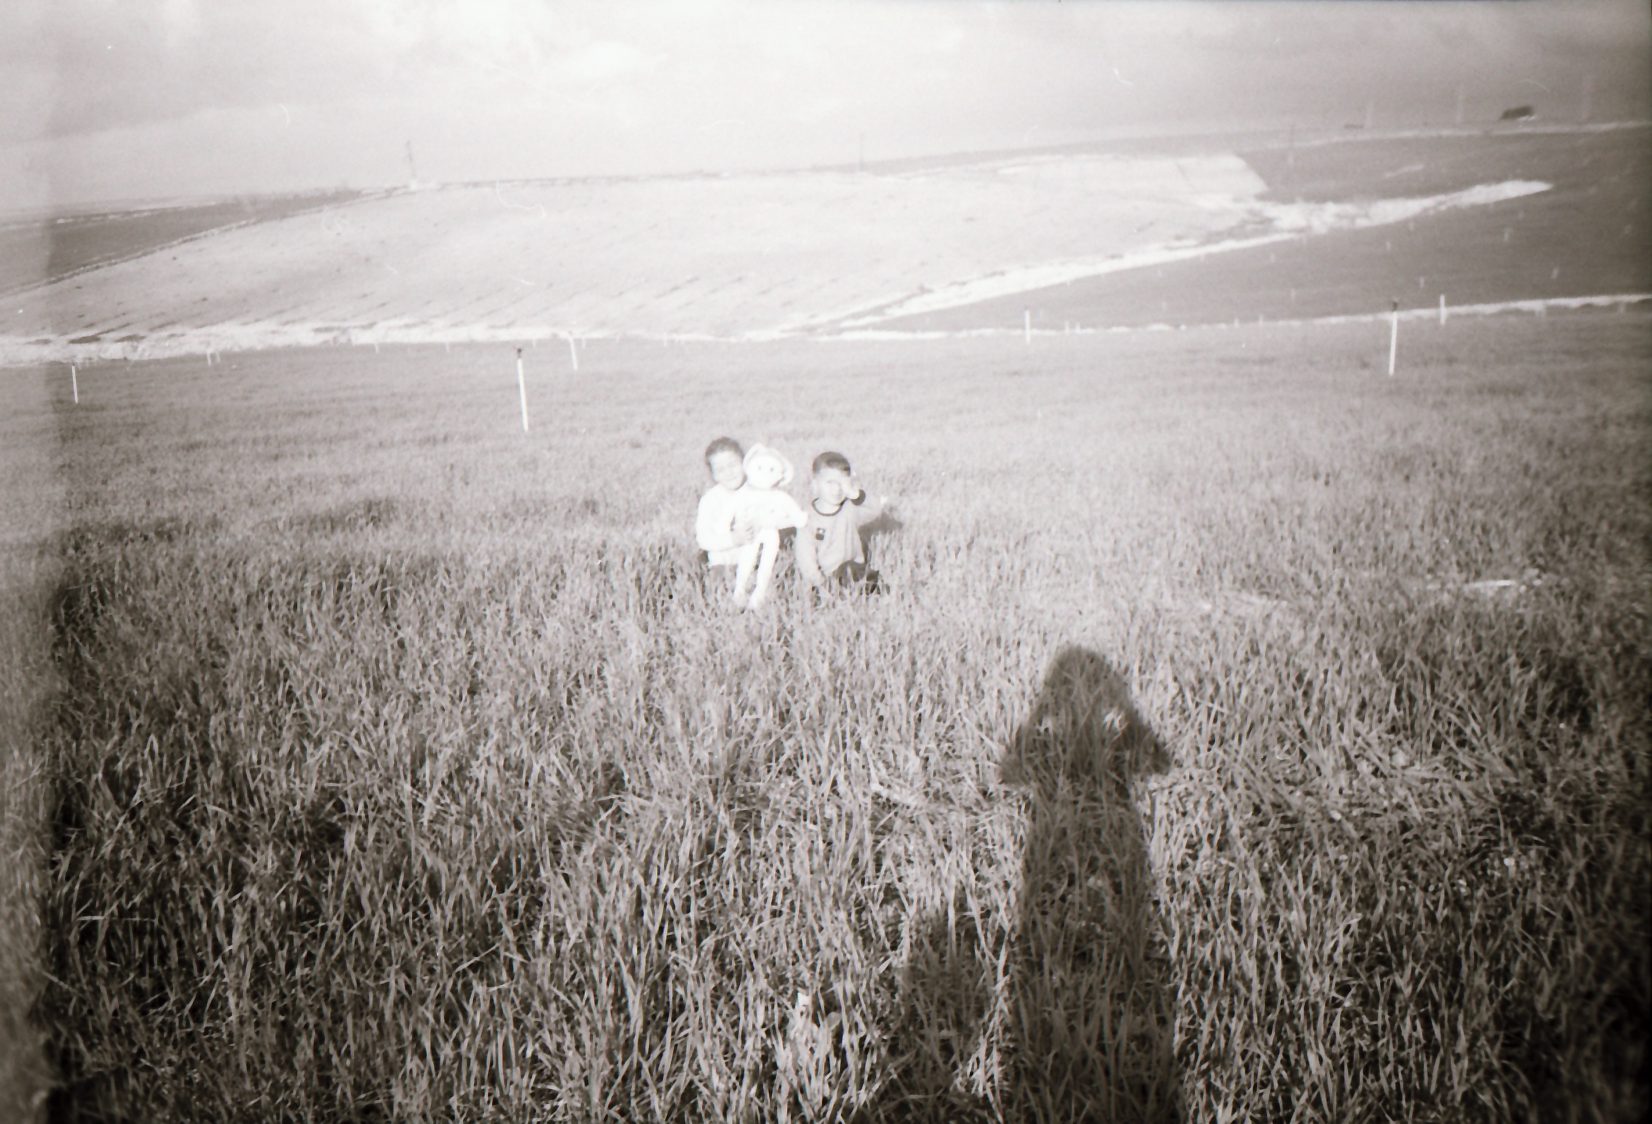 Portrait of children in field (Pic: Courtesy Sirkhane Darkroom)